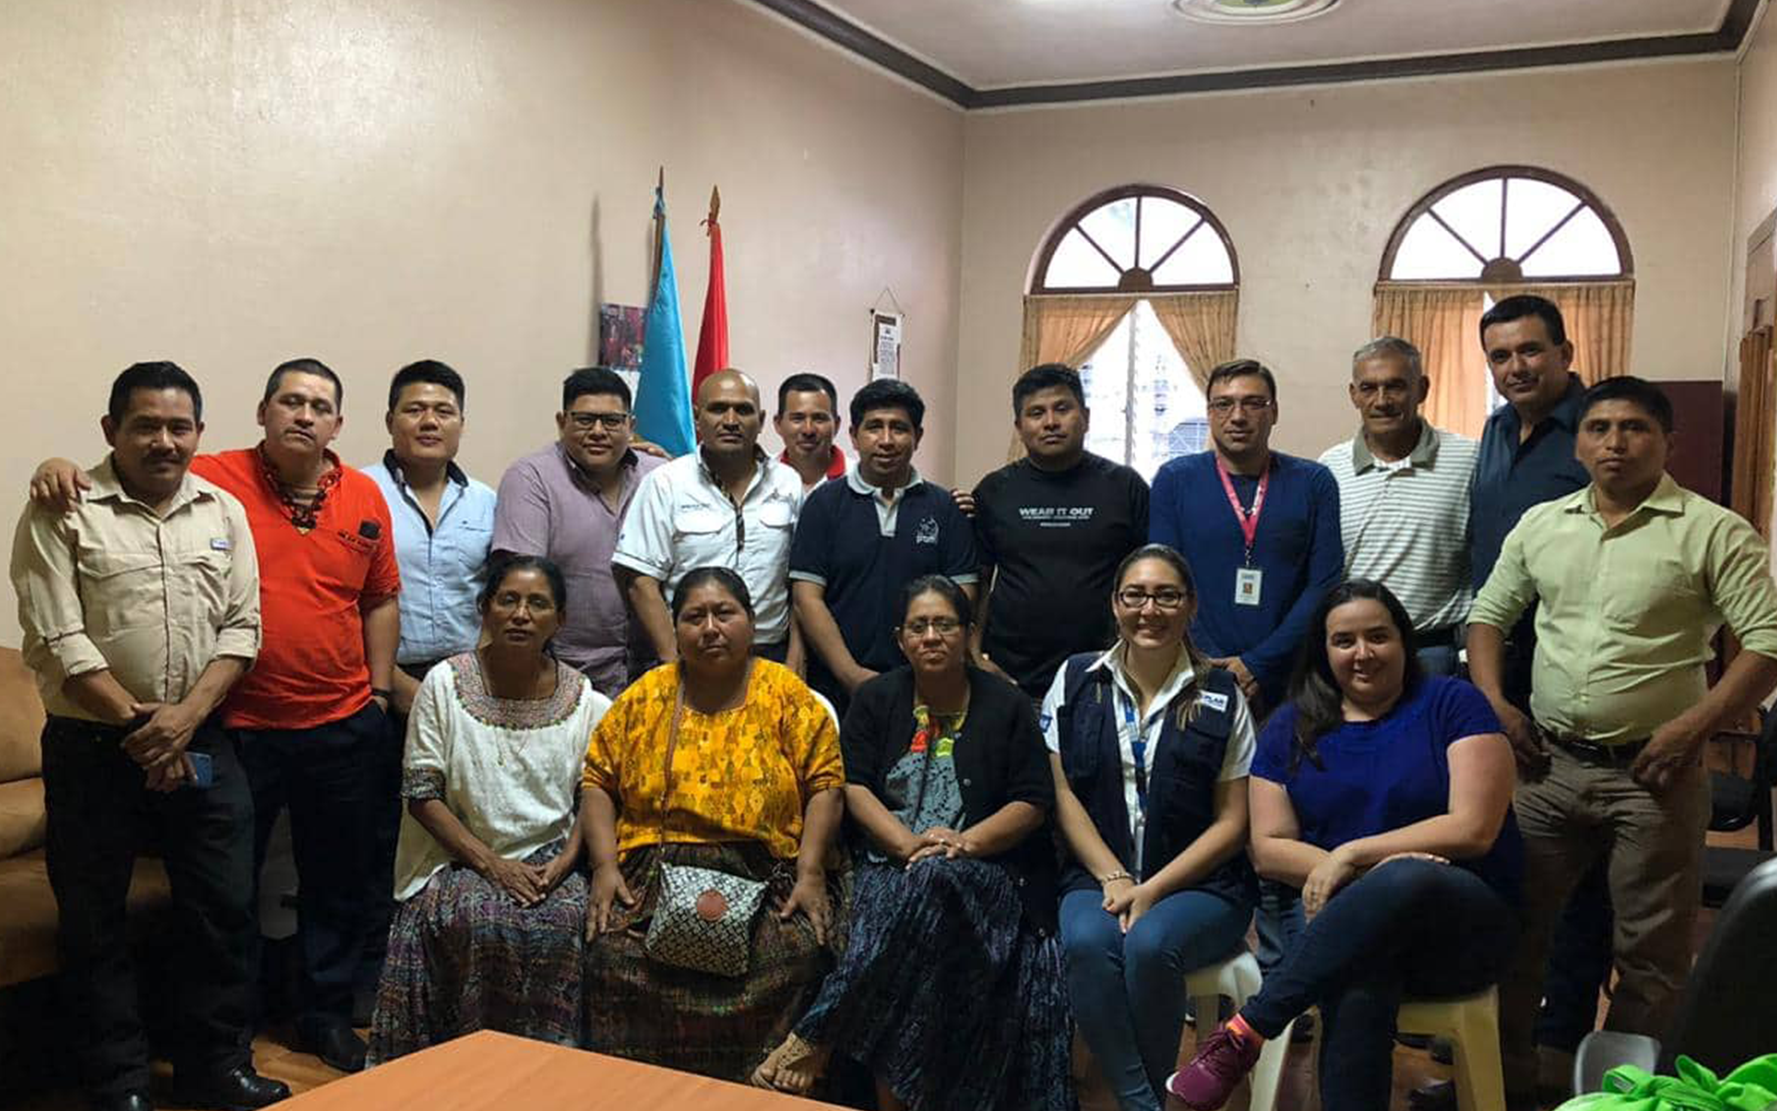 Presentación del proyecto Más Derechos Menos Discriminación al Concejo Municipal de San Pedro Carchá, Alta Verapaz